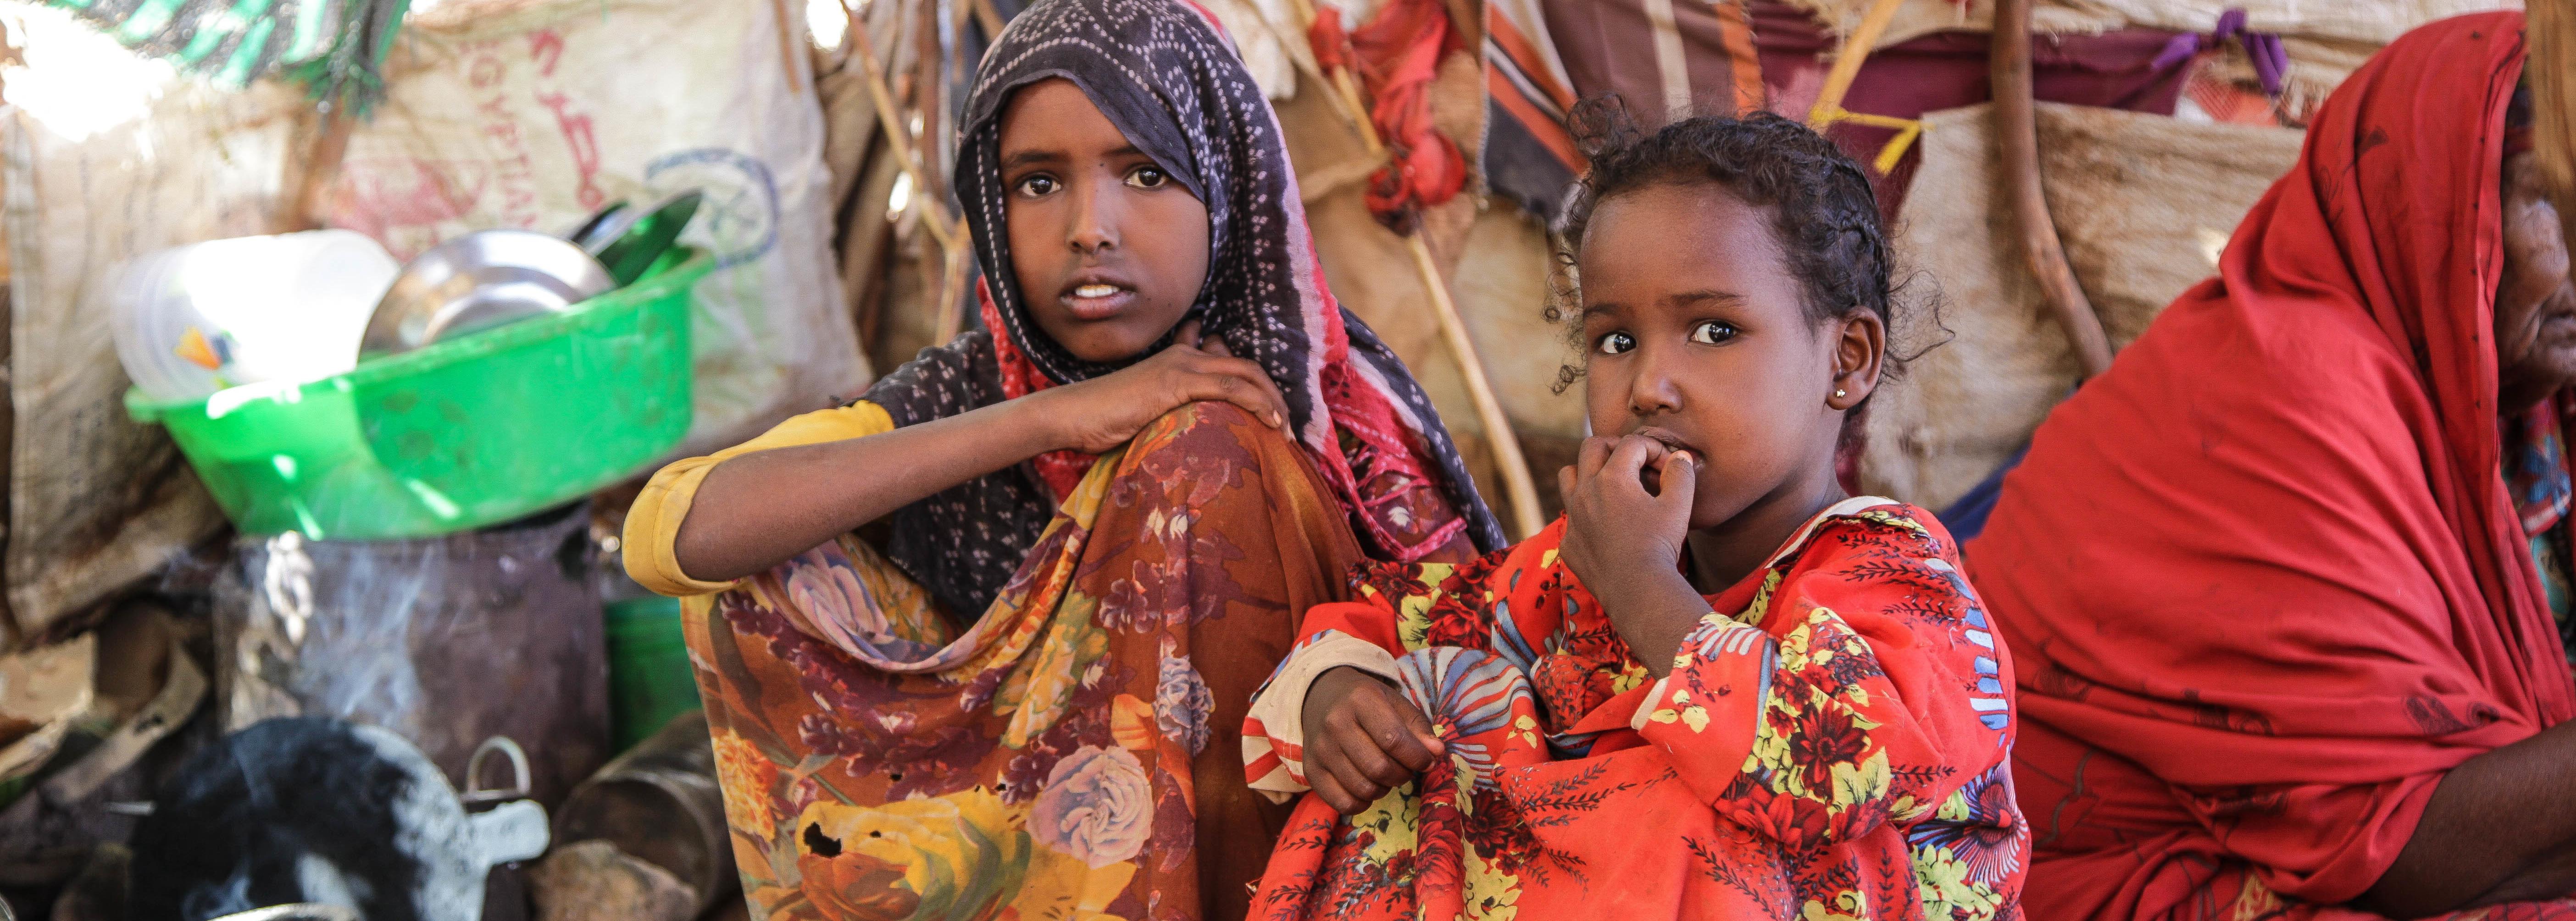 Zwei somalische Mädchen in bunten Kleidern (Quelle: Angelika Böhling)